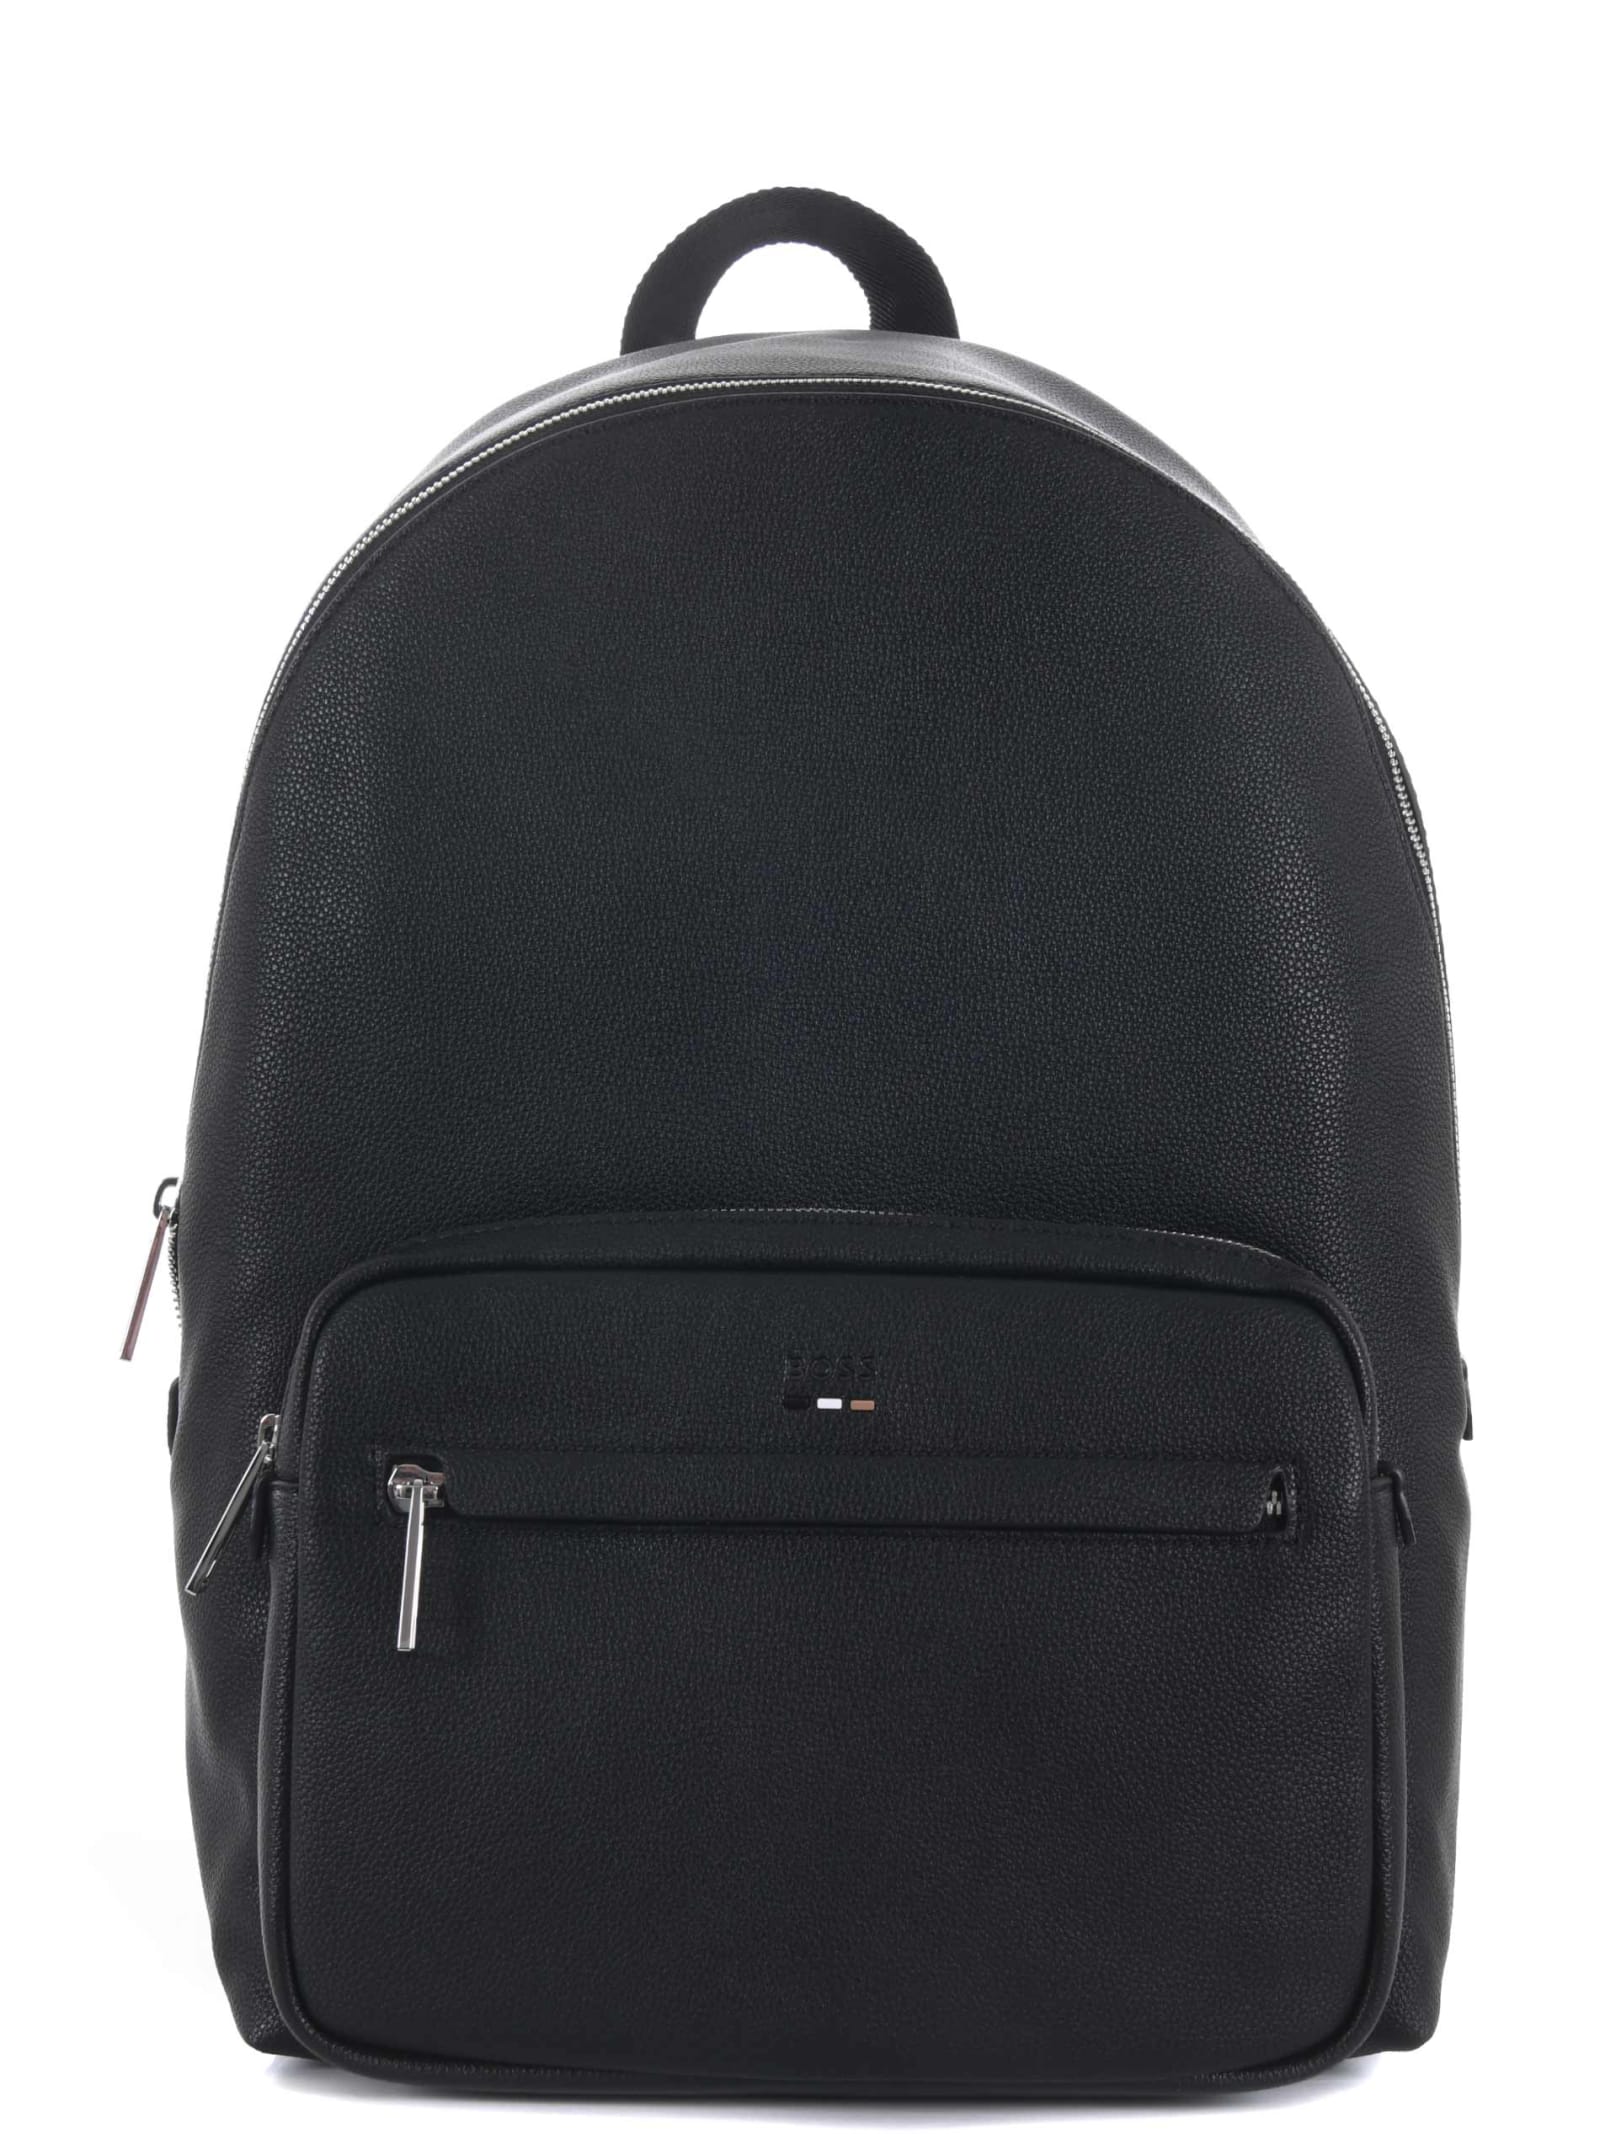 Hugo Boss Boss Backpack In Black